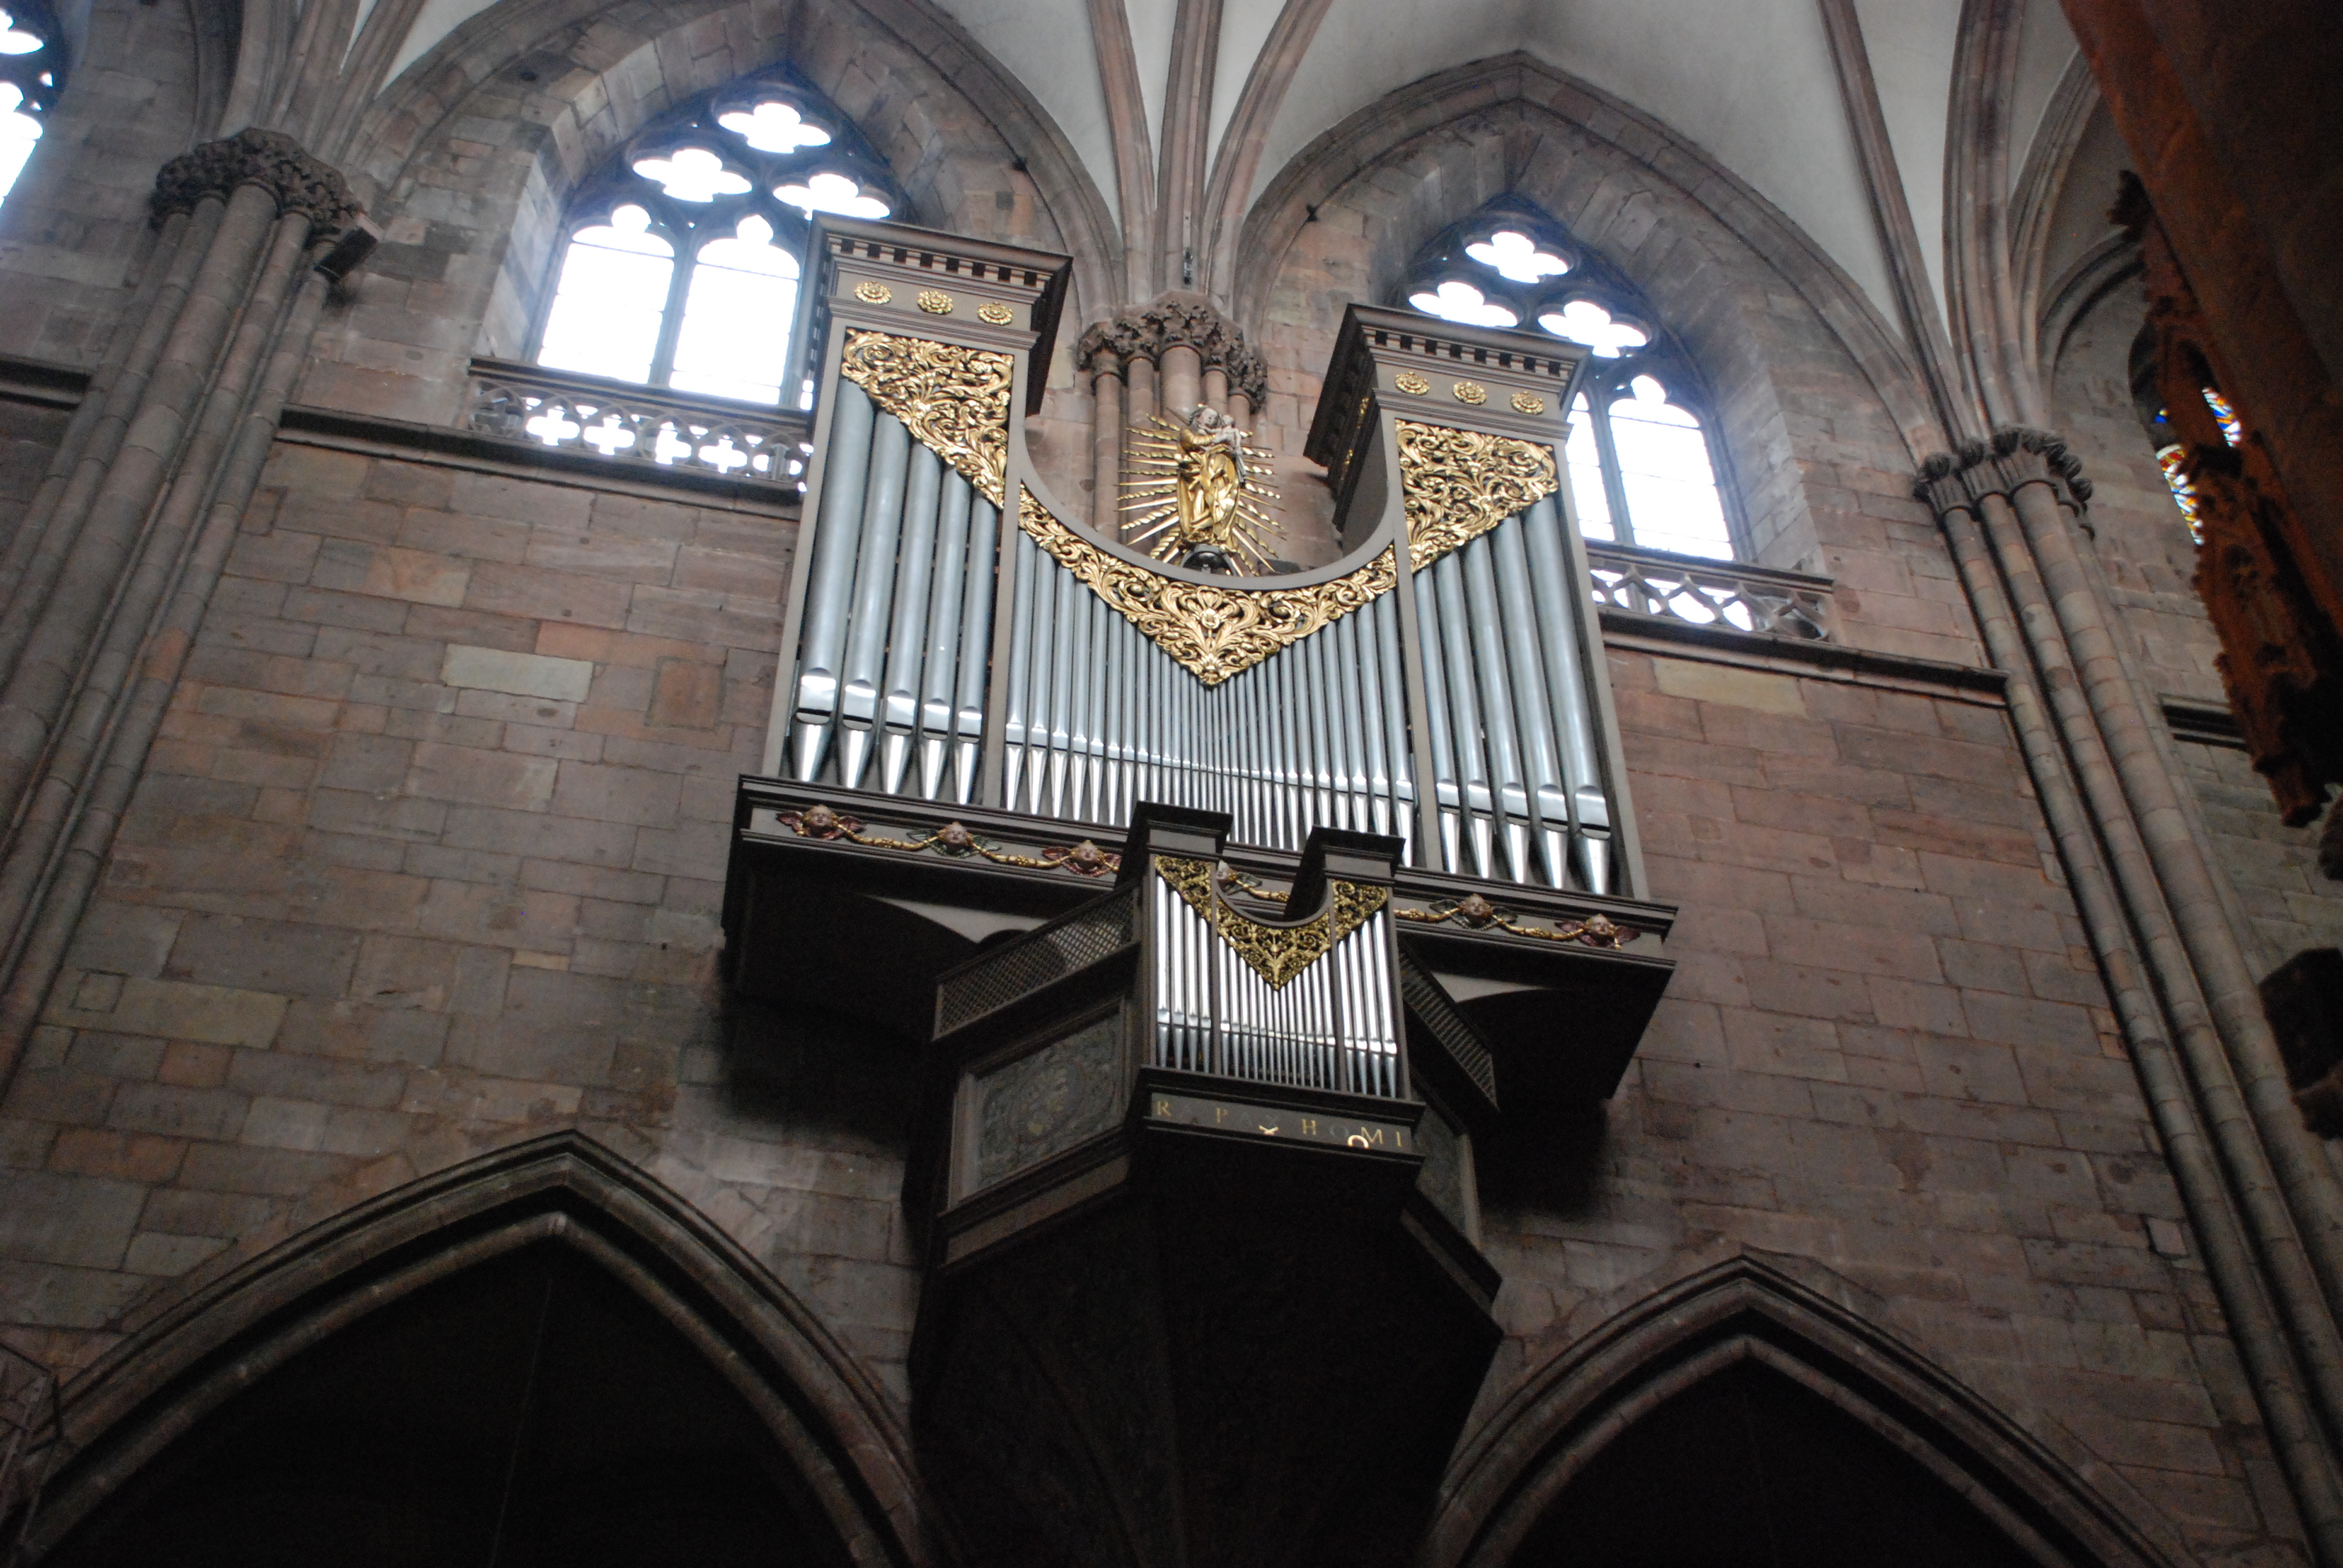 Фрайбургский кафедральный собор